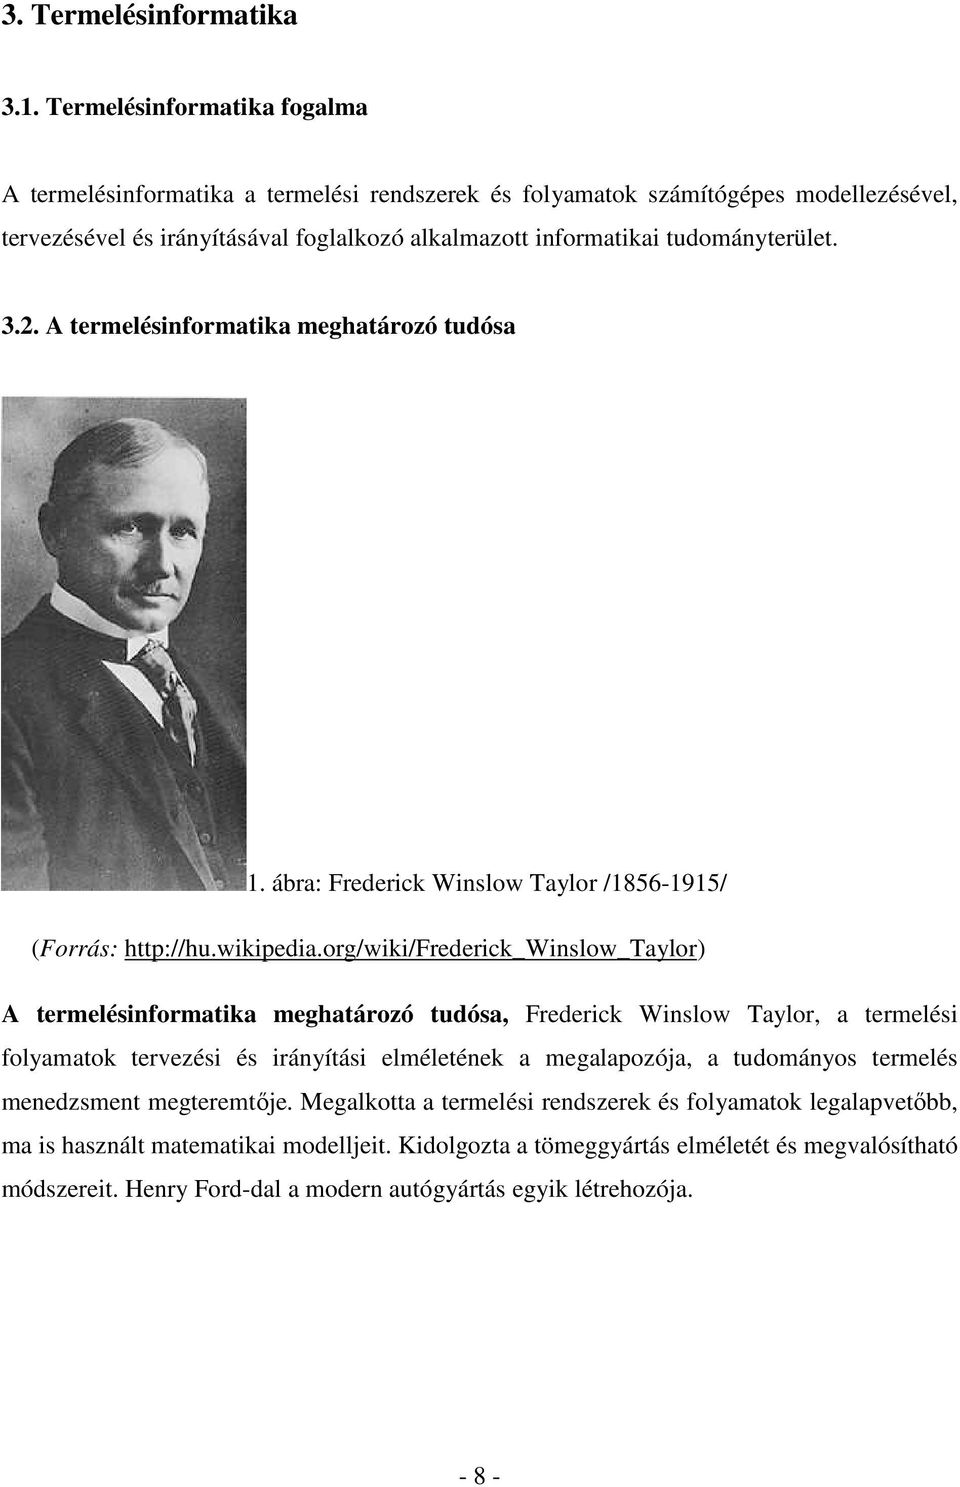 3.2. A termelésinformatika meghatározó tudósa 1. ábra: Frederick Winslow Taylor /1856-1915/ (Forrás: http://hu.wikipedia.